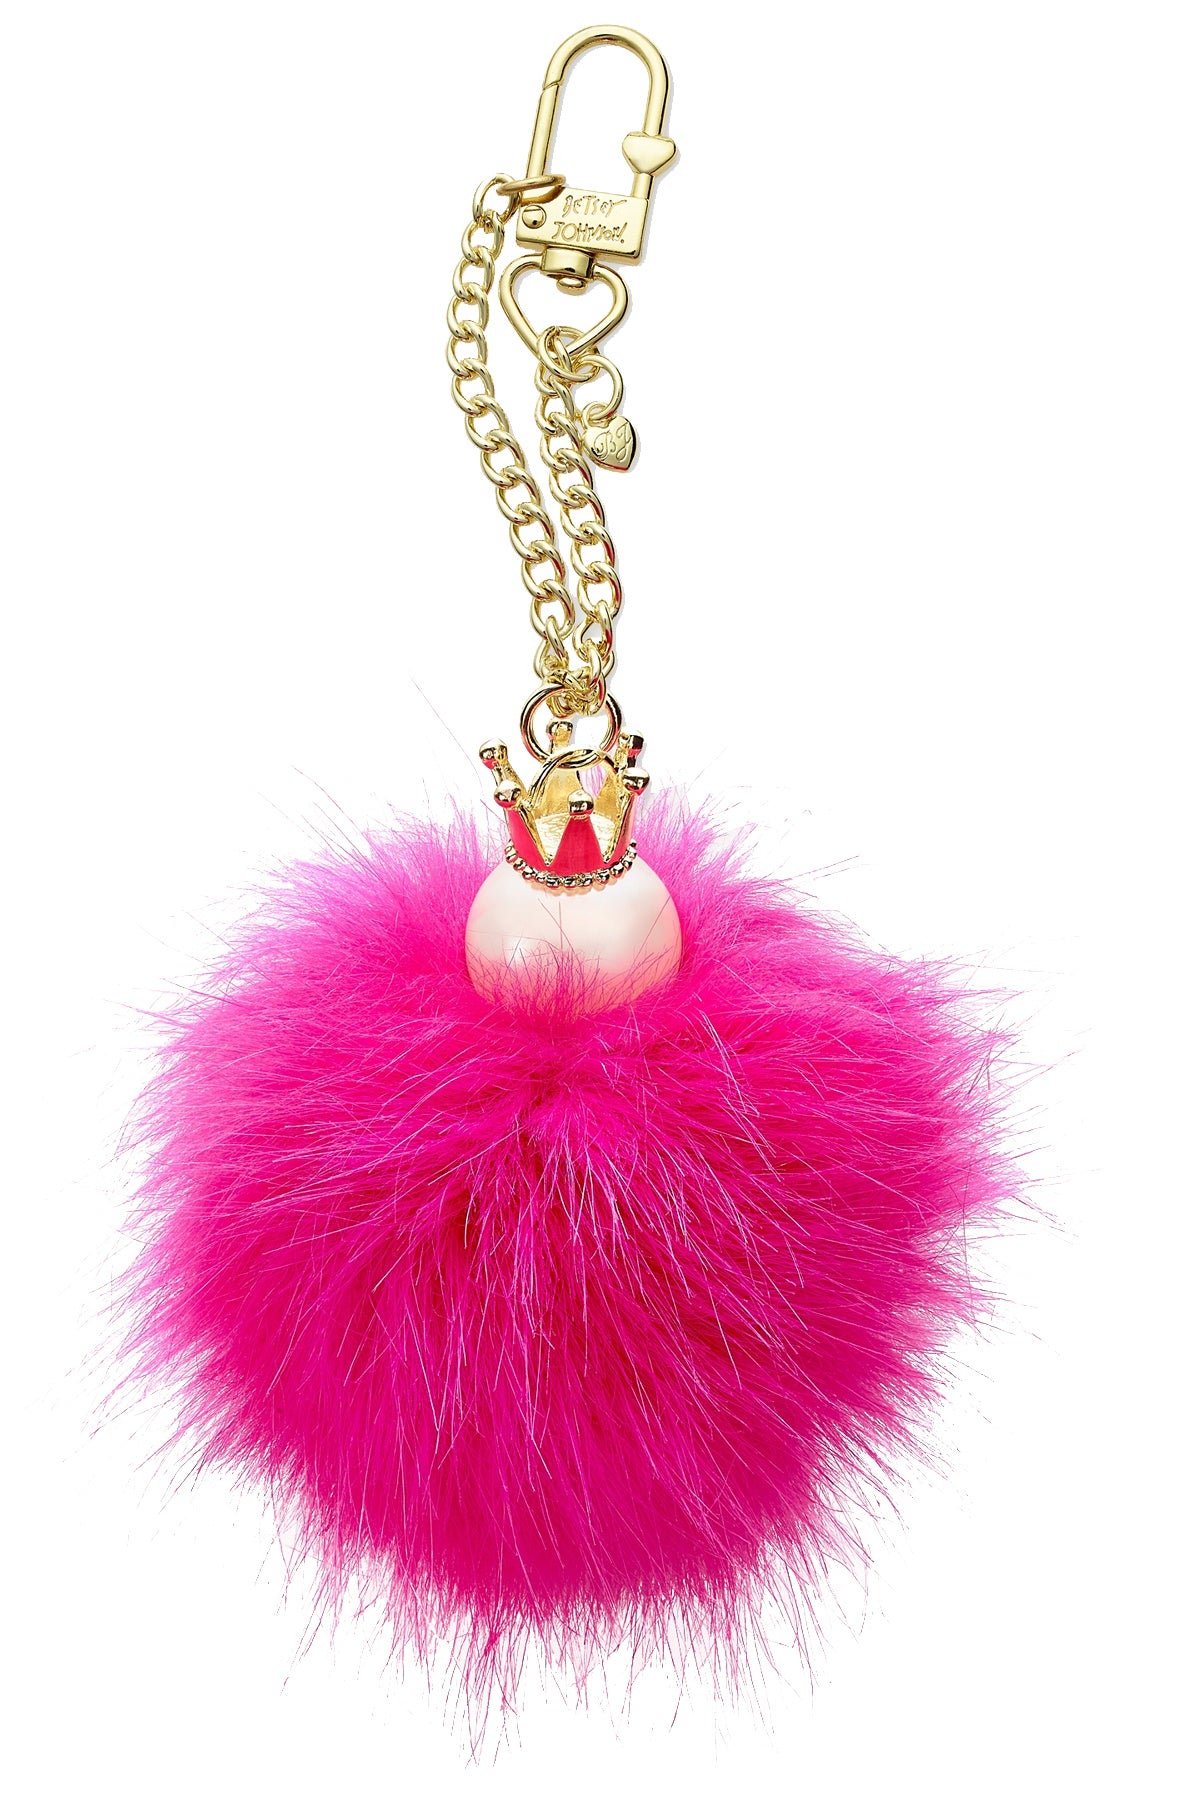 Betsey Johnson Pink Crown Pom Pom Handbag Clip